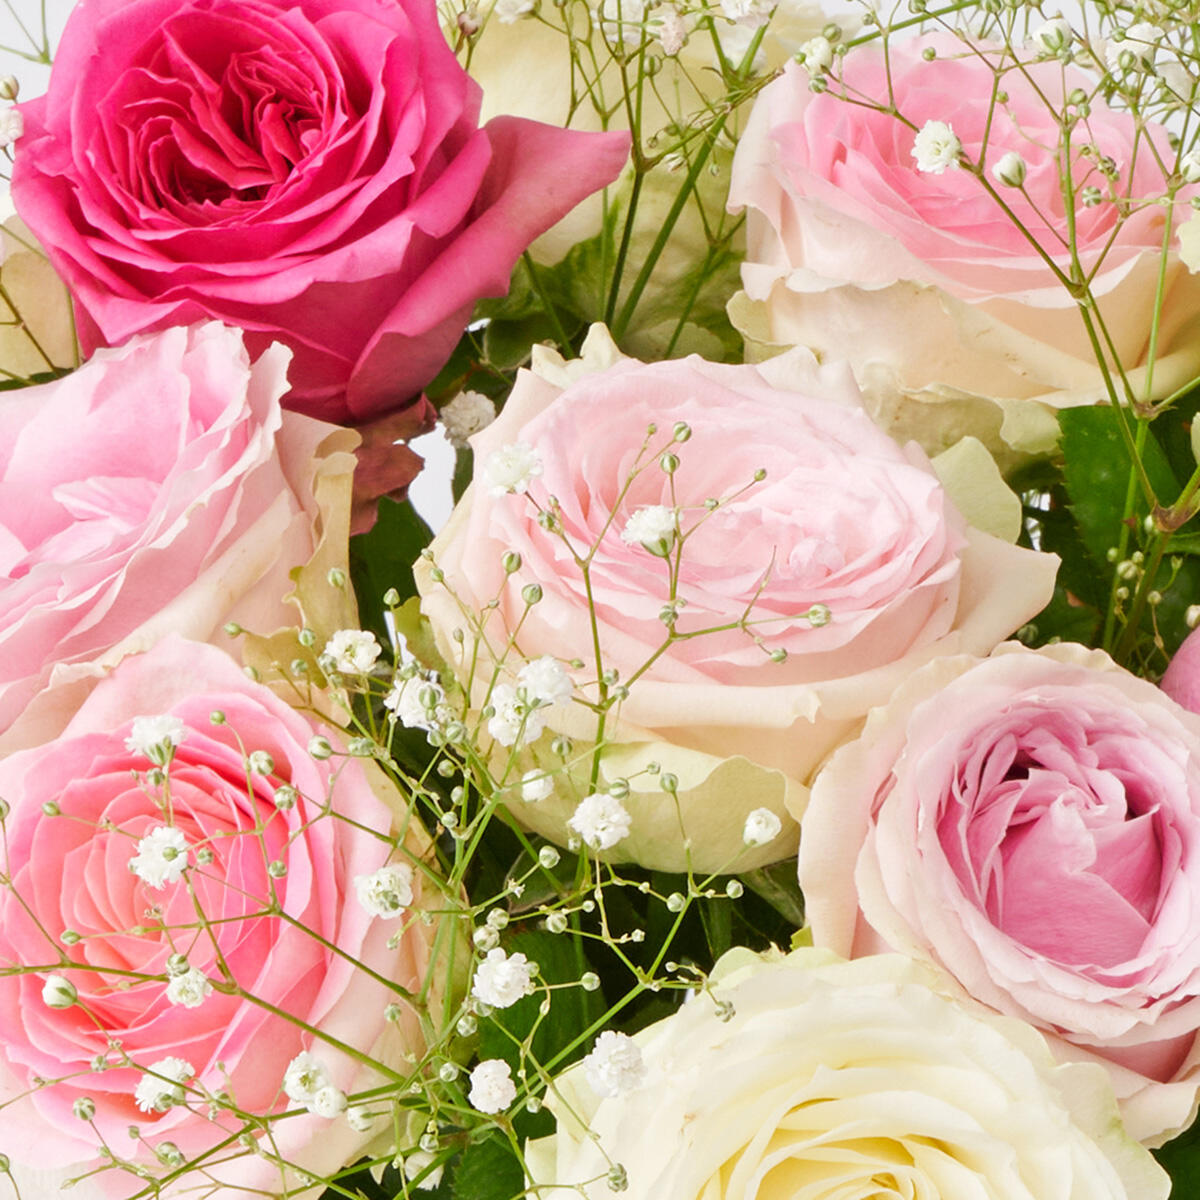 <p>農林水産大臣賞受賞・皇室献上実績の提携農園が育てたバラは、一般生花店で購入できるバラよりも花の大きさや花持ちの長さが特徴のお花です。</p>